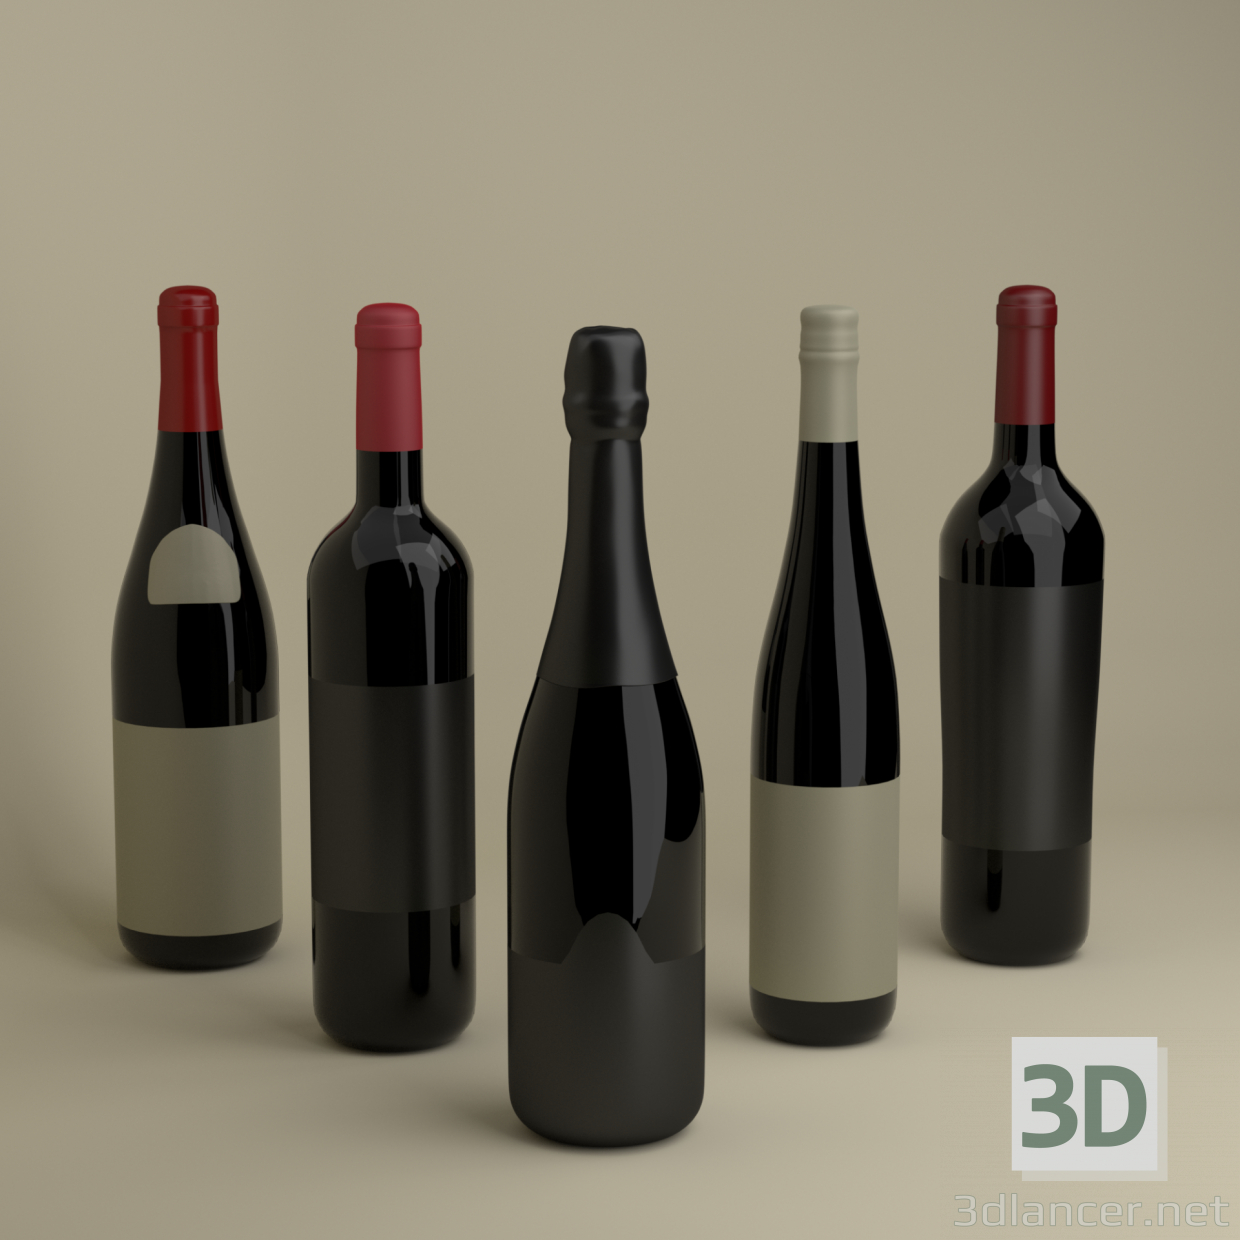 Französische Weinflaschen 3D-Modell kaufen - Rendern